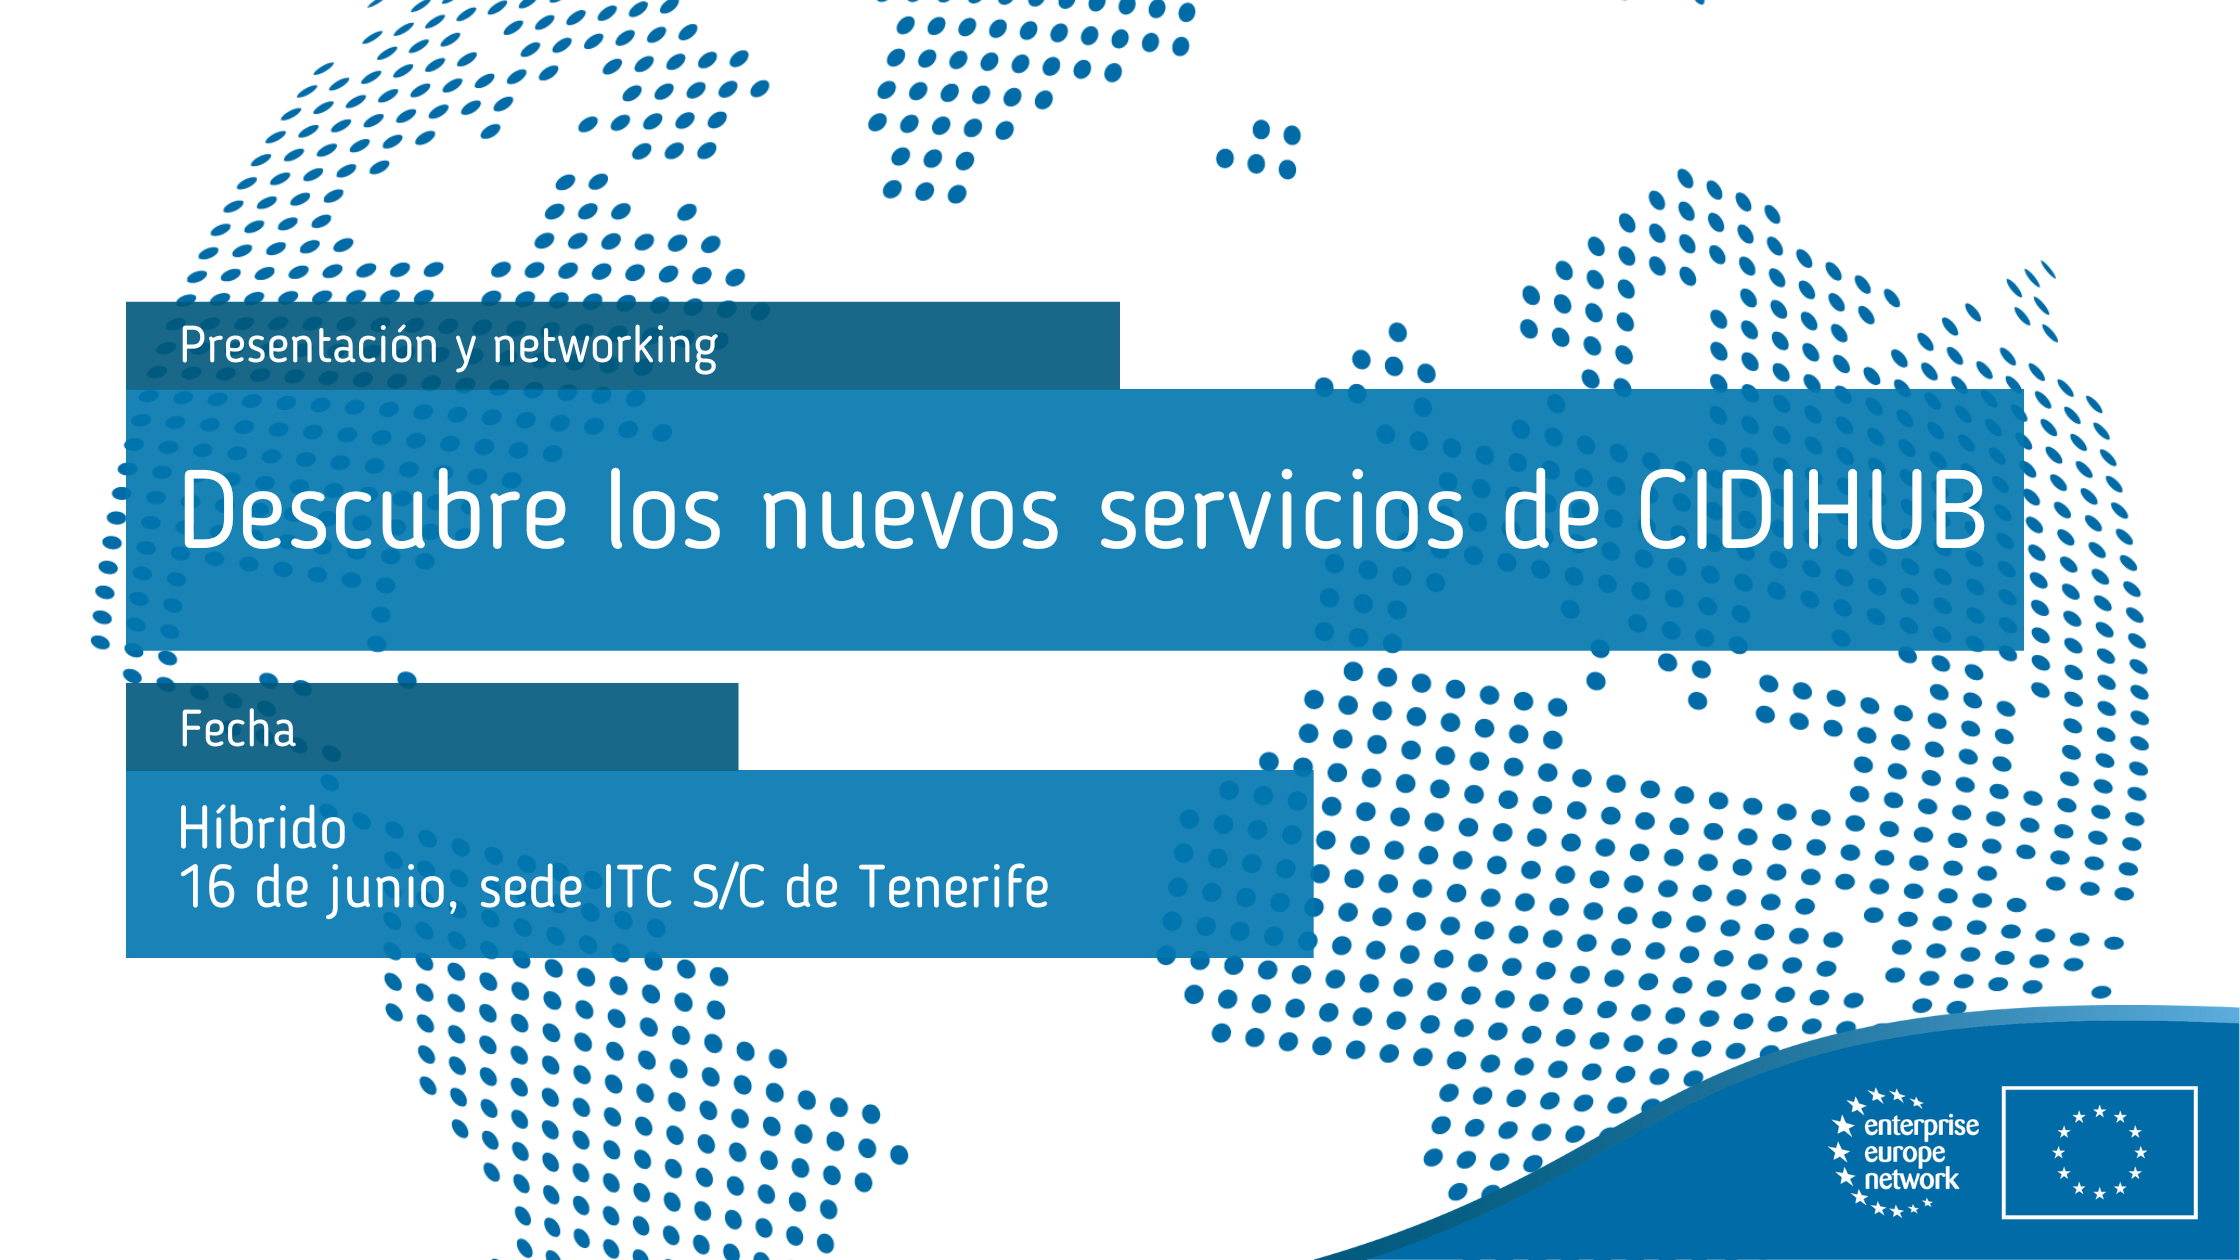 Jornada_de_presentación_Descubra_los_nuevos_servicios_de_CIDIHUB